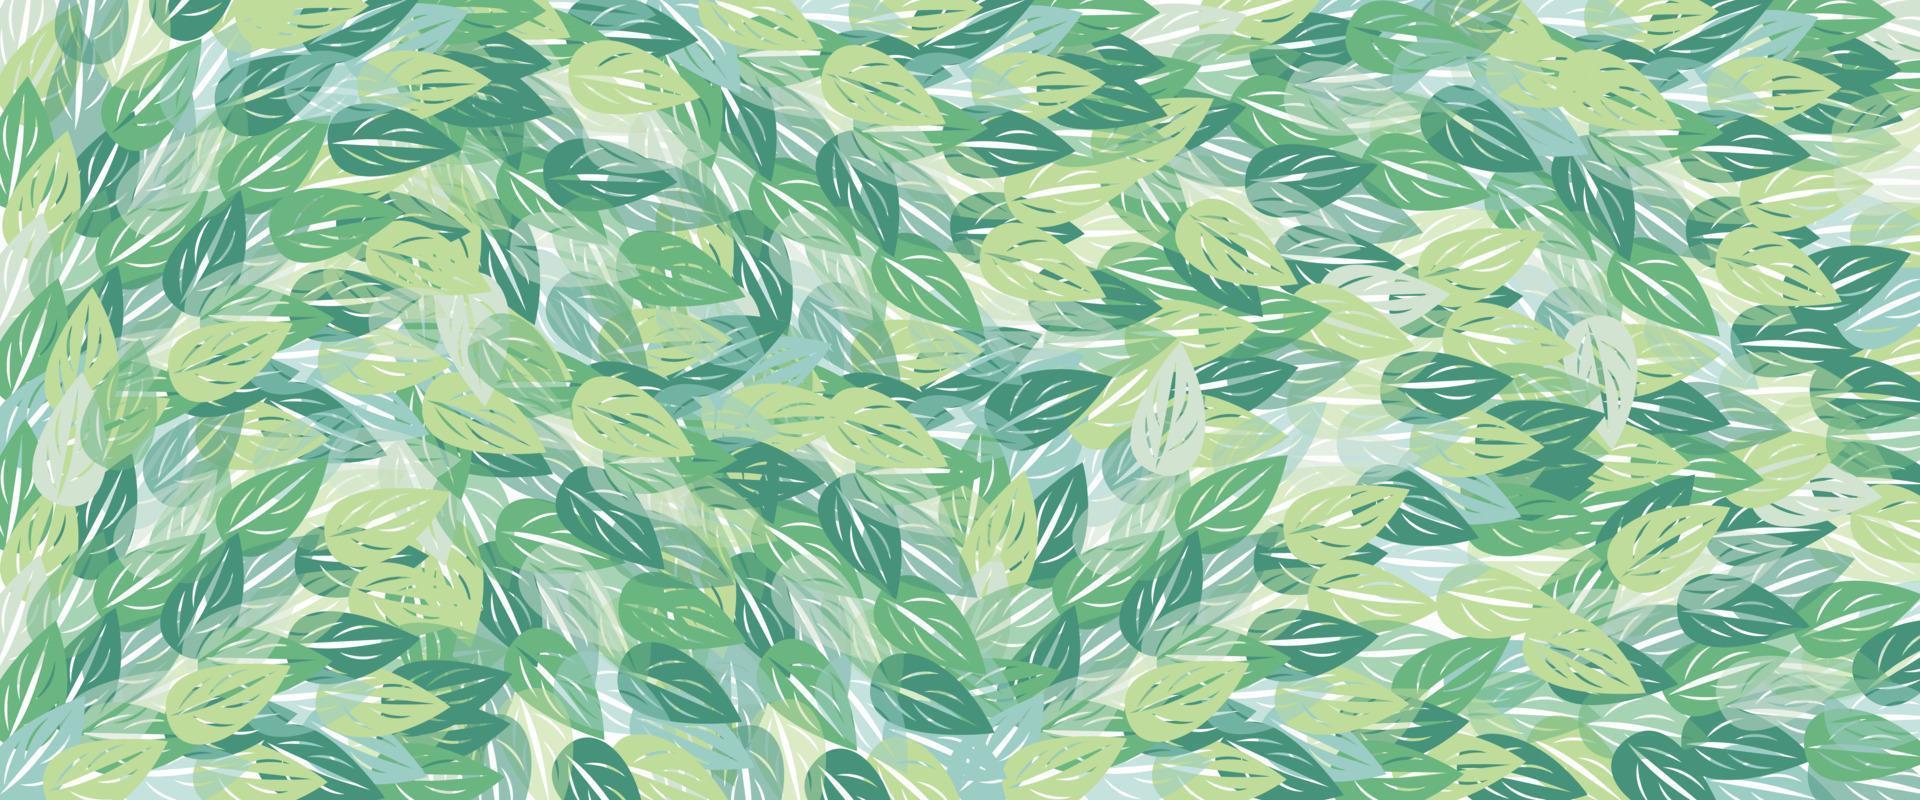 grüne Blätter. natürlicher Hintergrund und Tapete. design für stoff, druck, cover, banner und einladung. vektor